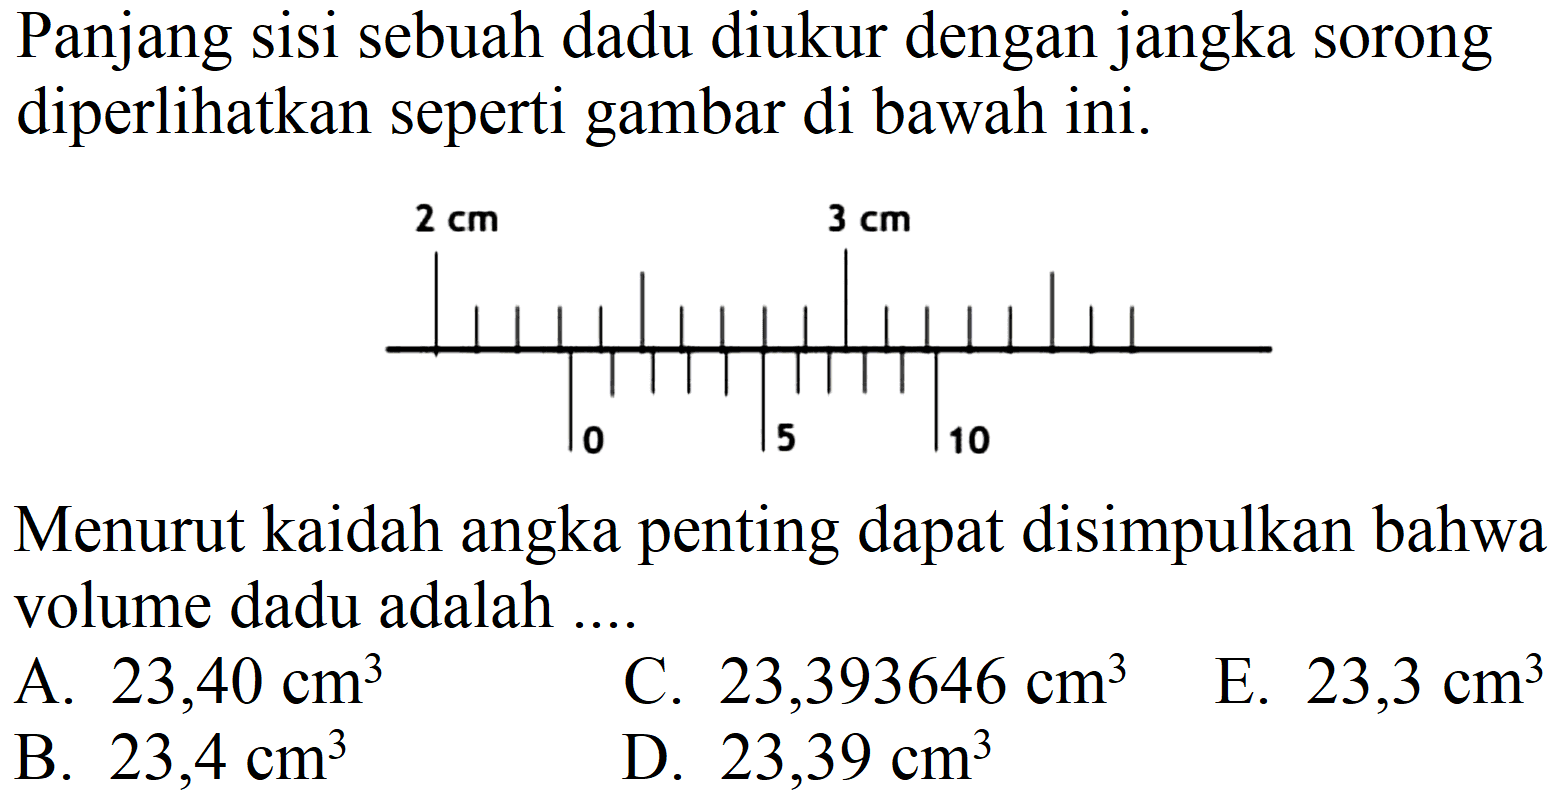 Panjang sisi sebuah dadu diukur dengan jangka sorong diperlihatkan seperti gambar di bawah ini.
2 cm 3 cm 0 5 10
Menurut kaidah angka penting dapat disimpulkan bahwa volume dadu adalah ....
A.  23,40 cm^(3) 
C.  23,393646 cm^(3) 
E.  23,3 cm^(3) 
B.  23,4 cm^(3) 
D.  23,39 cm^(3) 